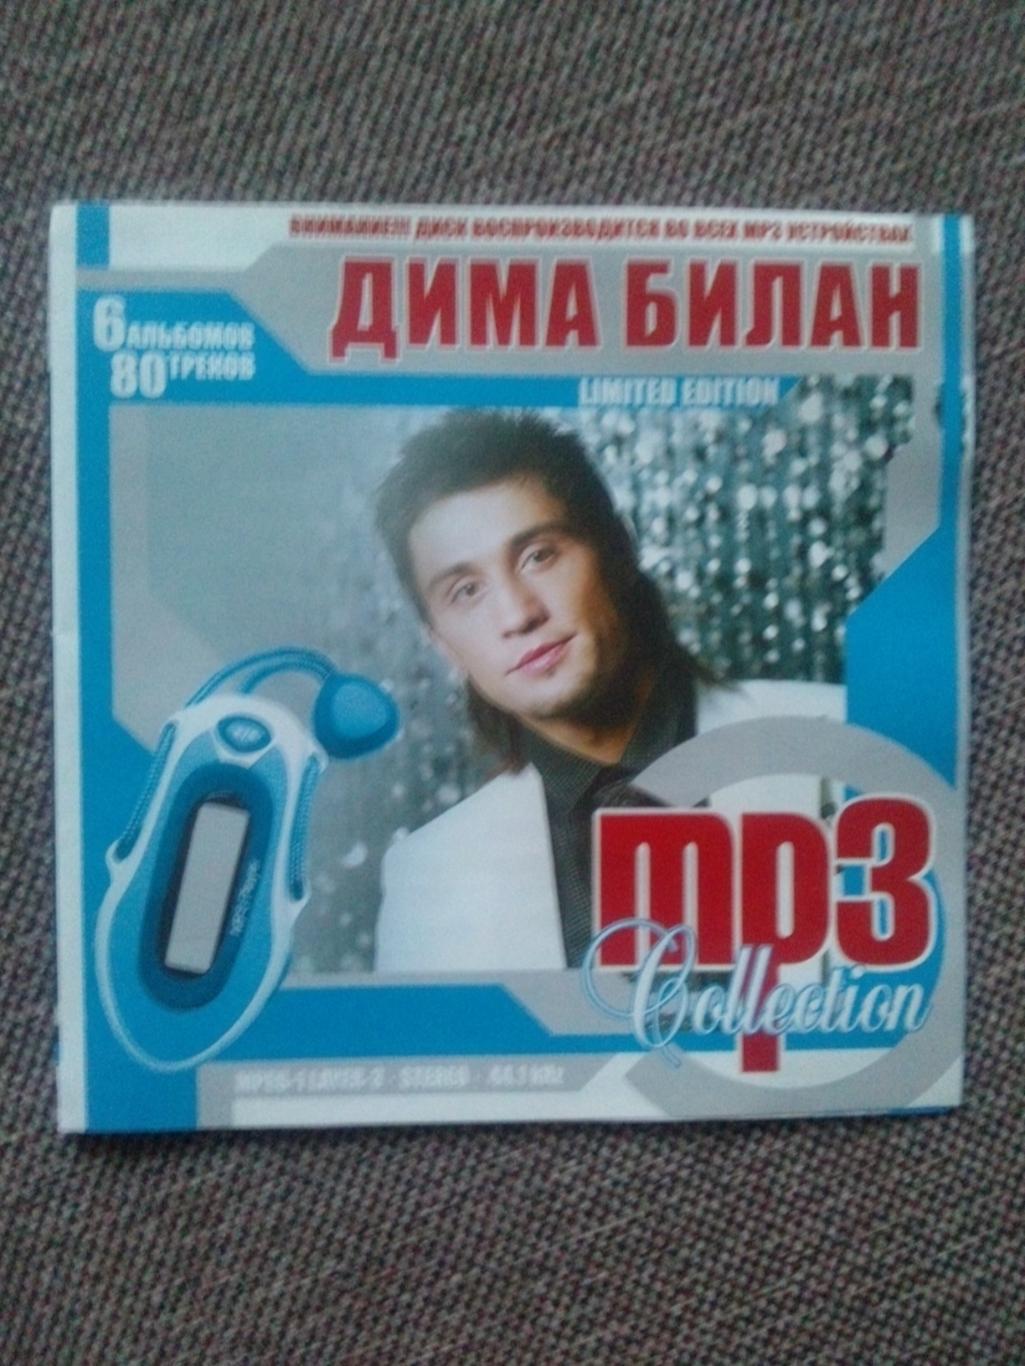 MP - 3 CD диск : Дима Билан 2004 - 2008 гг. (5 альбомов) Российская поп - музыка